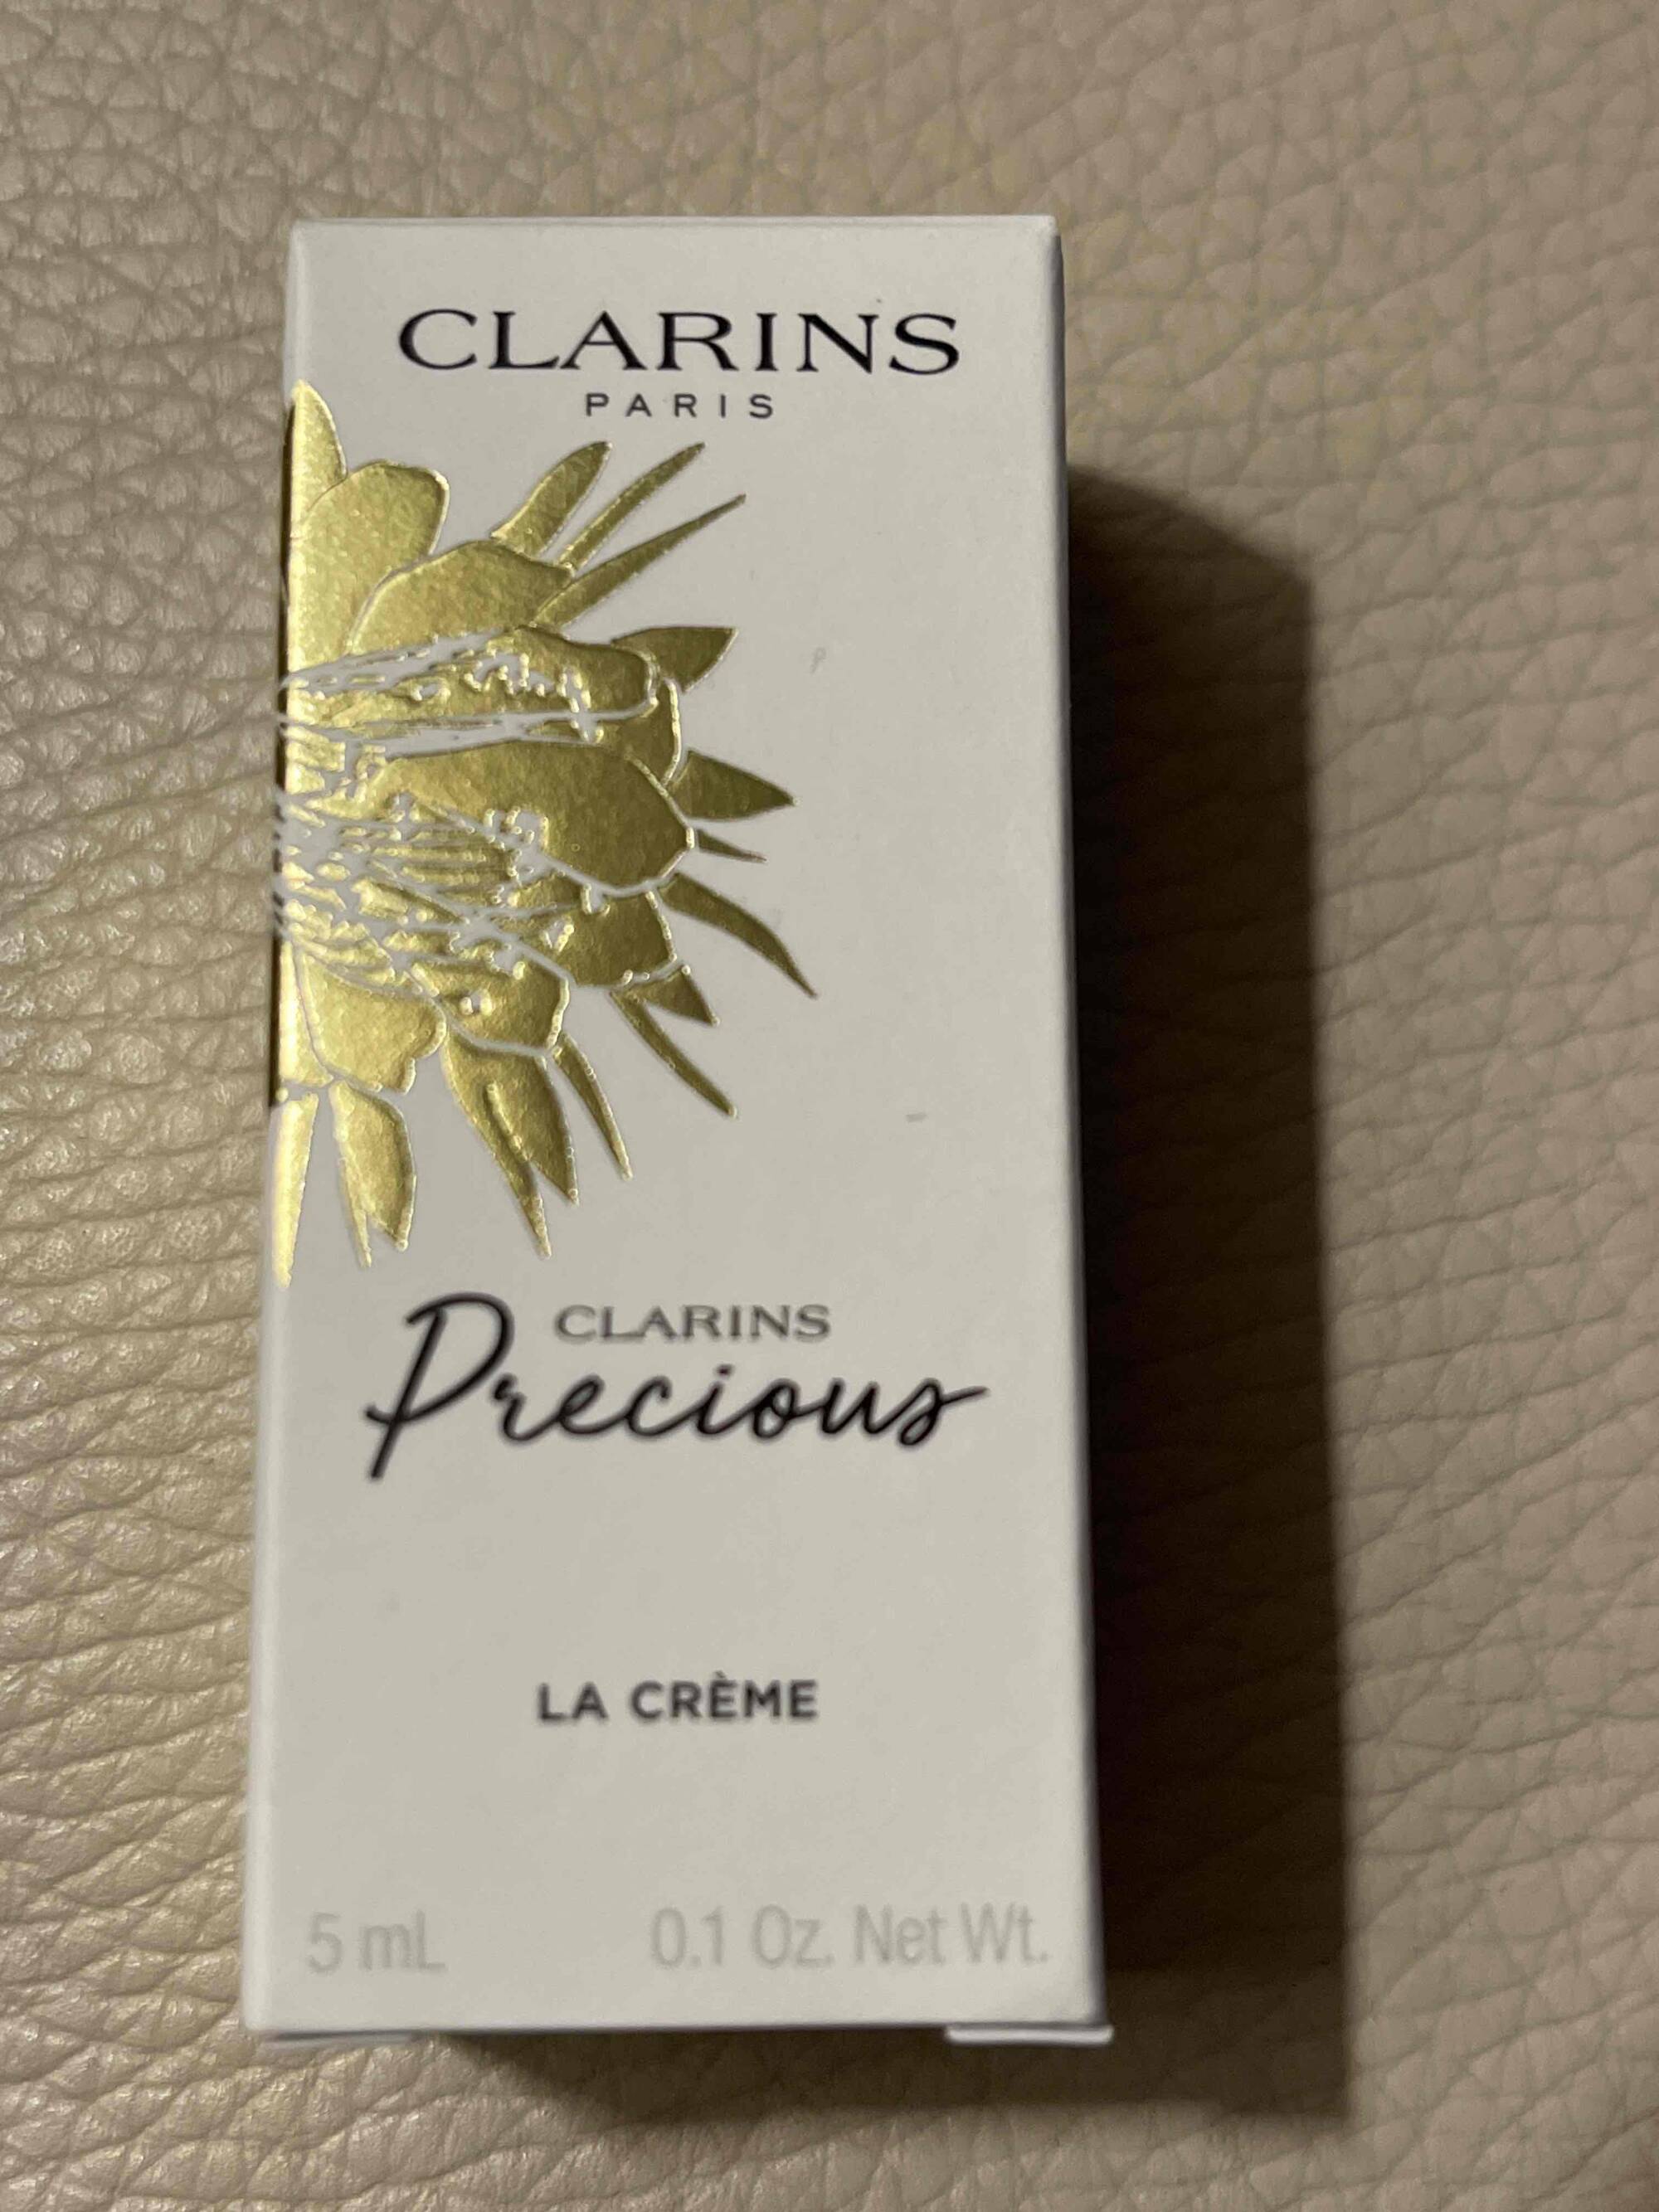 CLARINS - Clarins precious - La crème